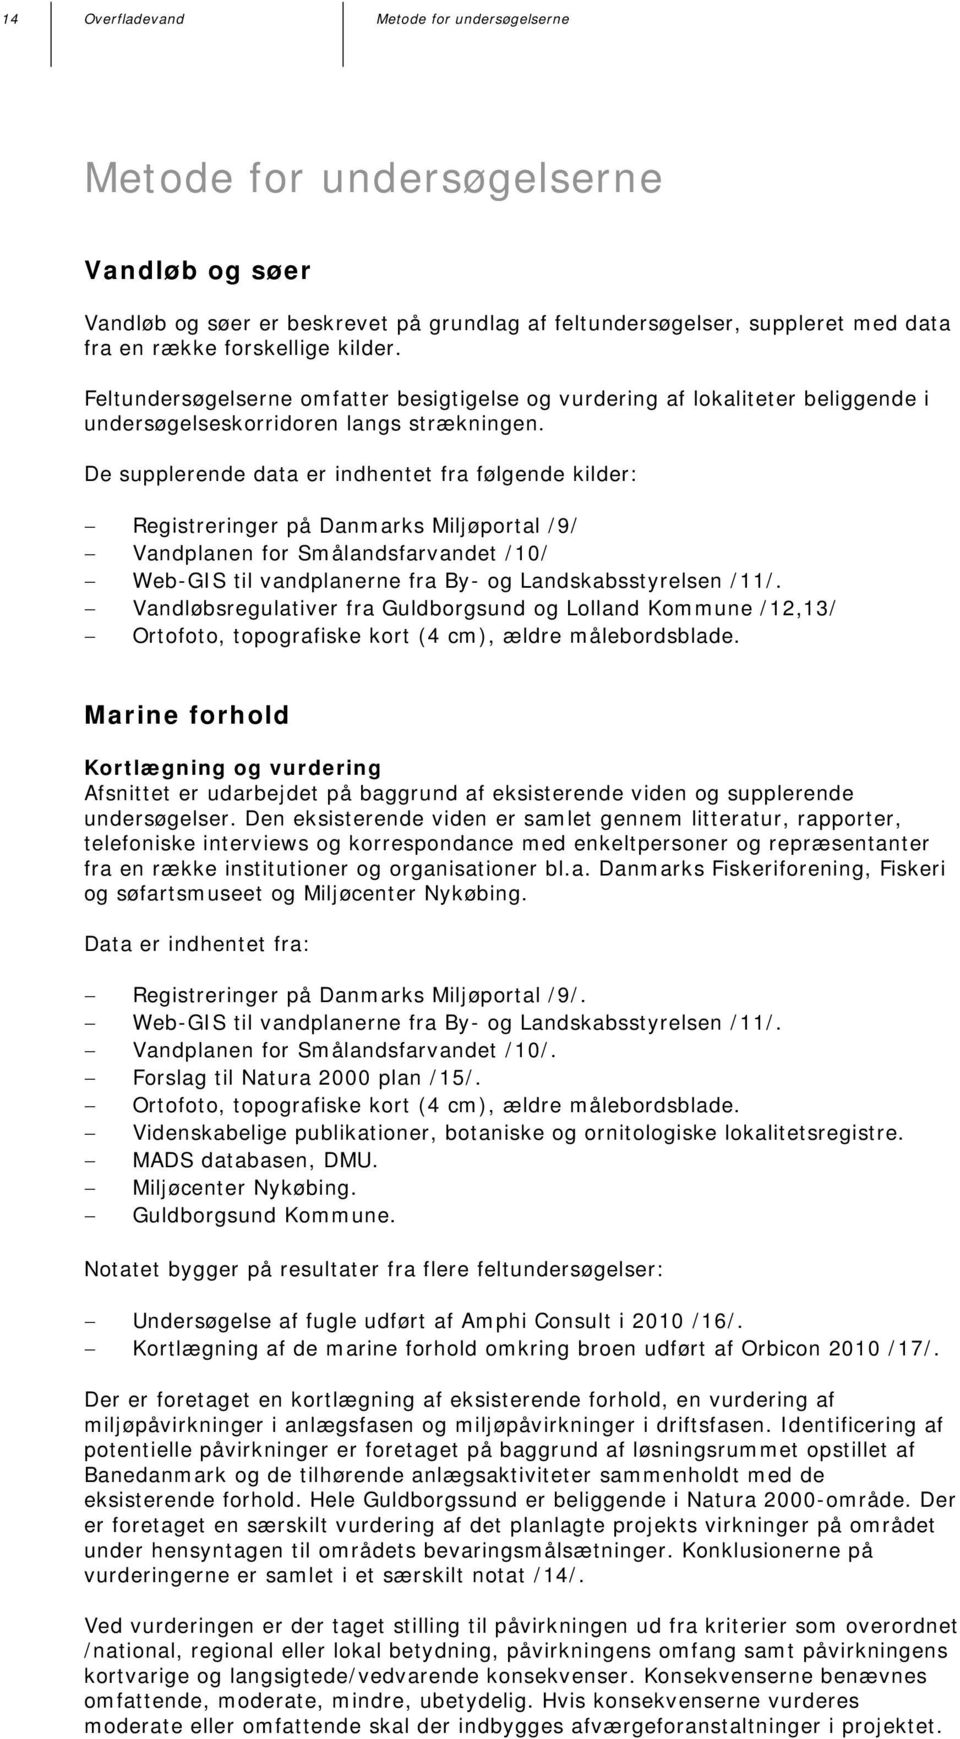 De supplerende data er indhentet fra følgende kilder: Registreringer på Danmarks Miljøportal /9/ Vandplanen for Smålandsfarvandet /10/ Web-GIS til vandplanerne fra By- og Landskabsstyrelsen /11/.